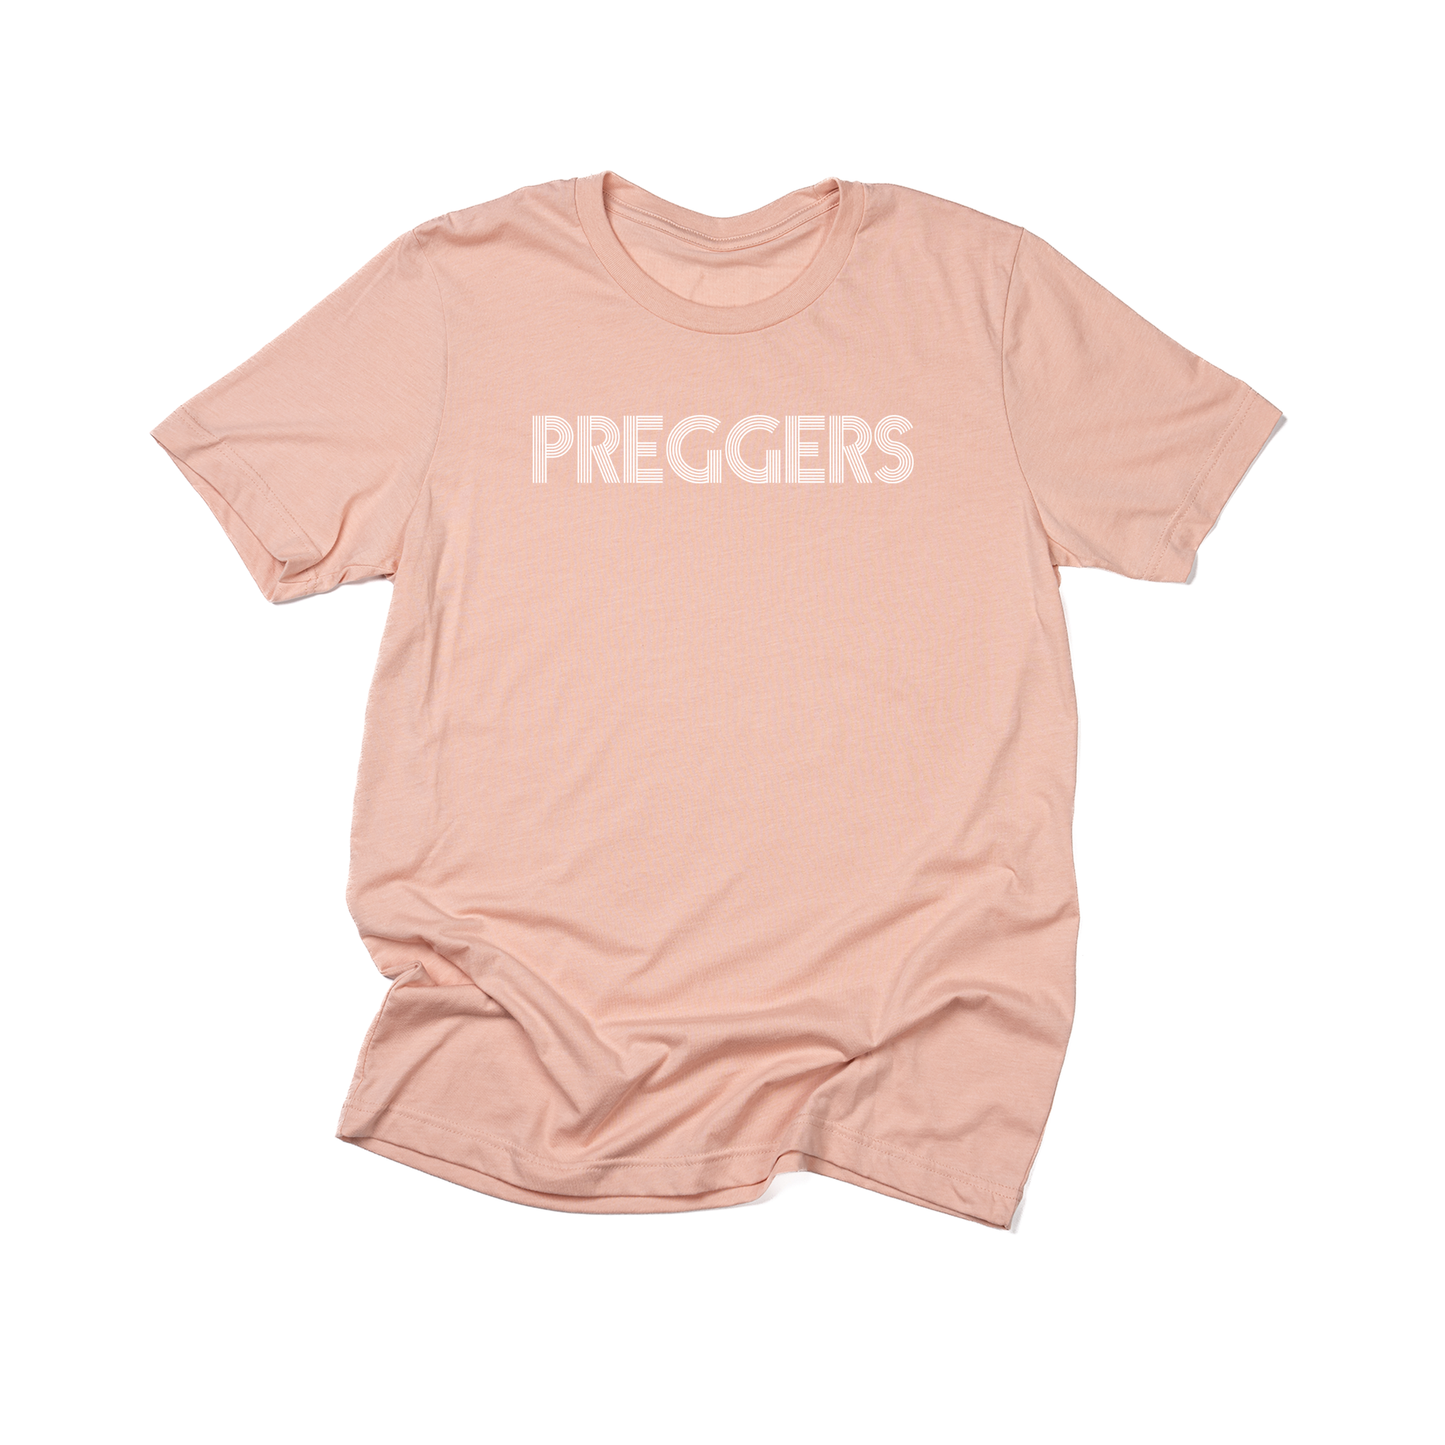 PREGGERS (White) - Tee (Peach)